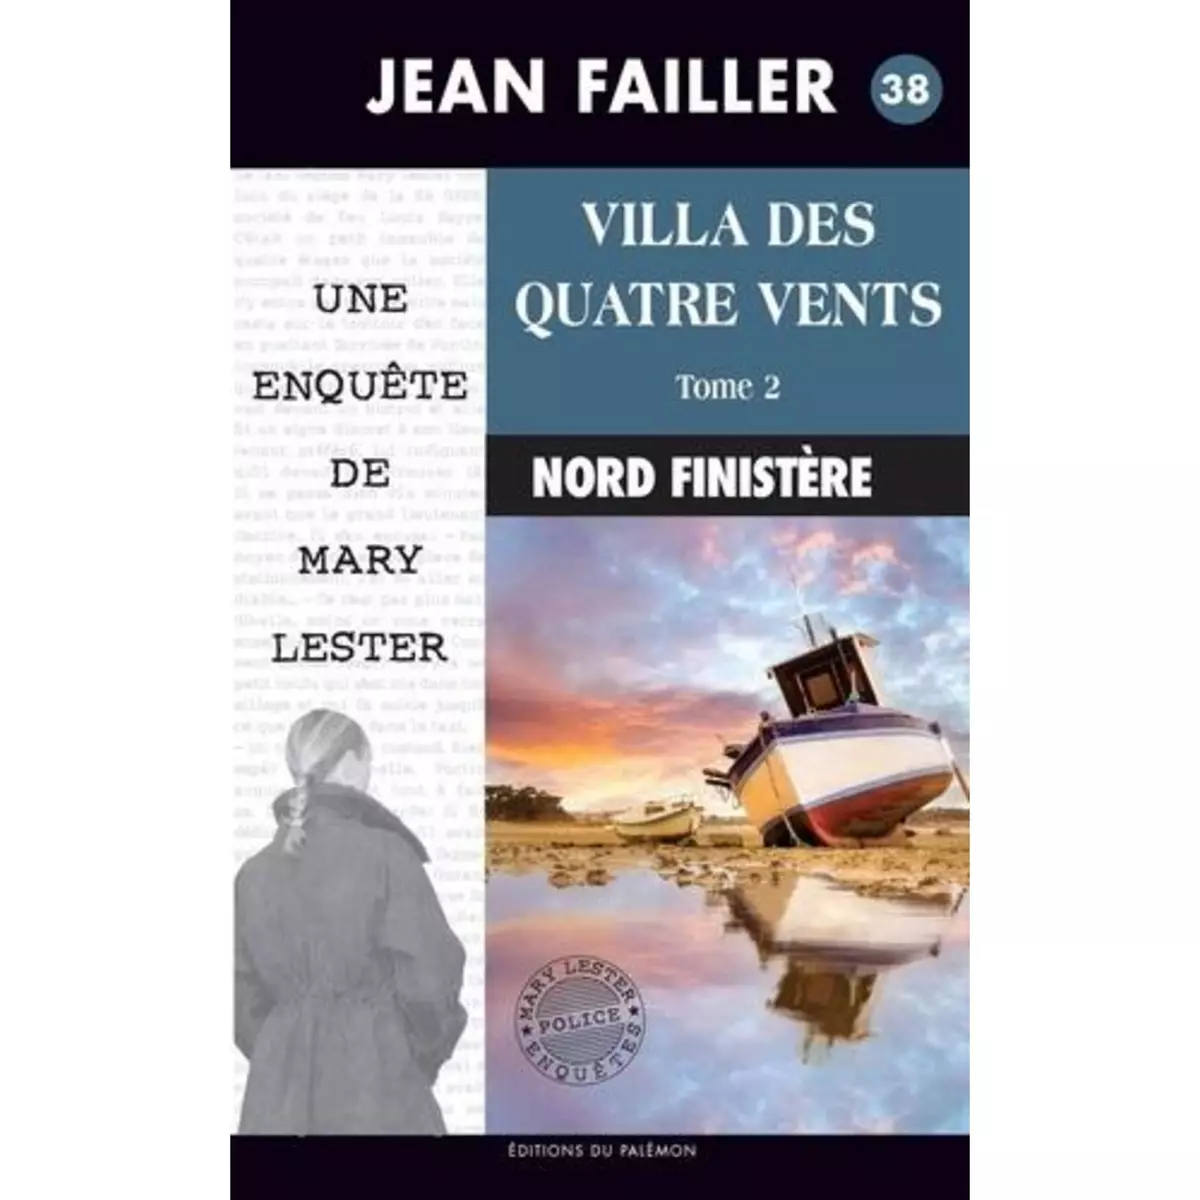  UNE ENQUETE DE MARY LESTER : VILLA DES QUATRE VENTS. TOME 2, Failler Jean